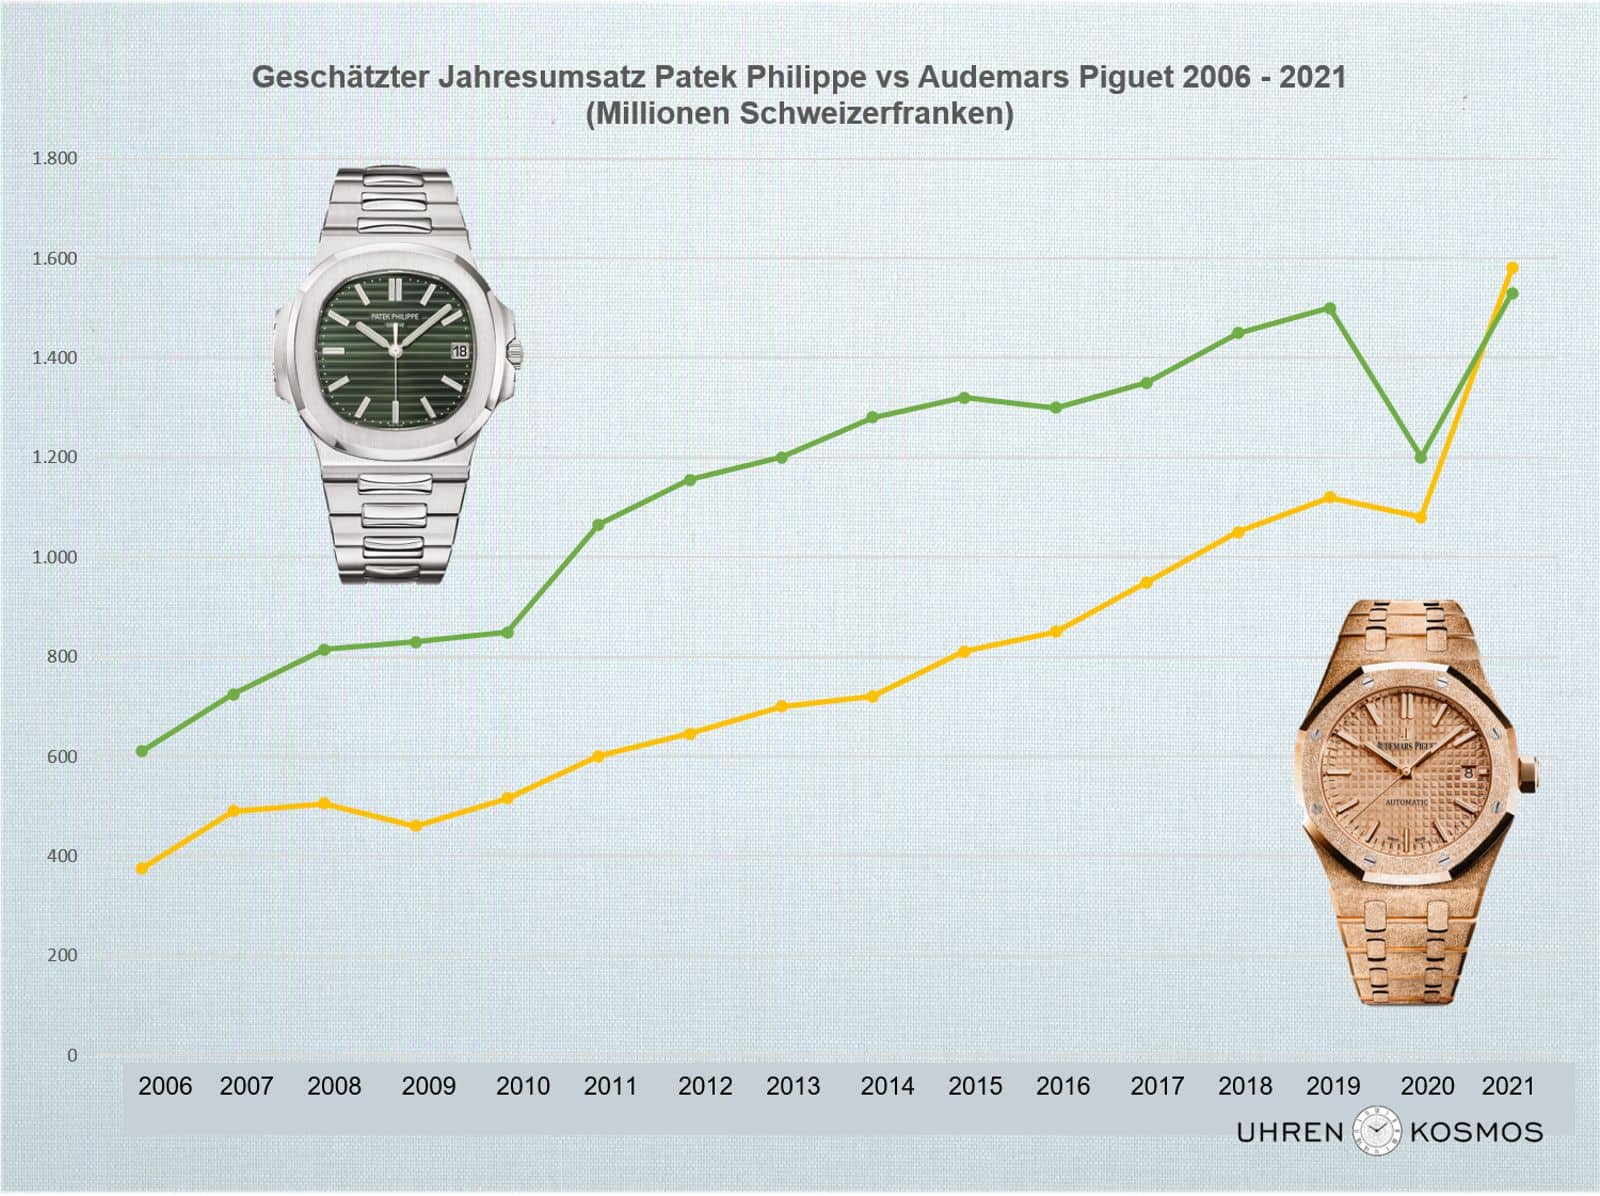 Umsatzentwicklung geschaetzt Patek Philippe vs Audemars Piguet 2006 2021 Grafik C Uhrenkosmos